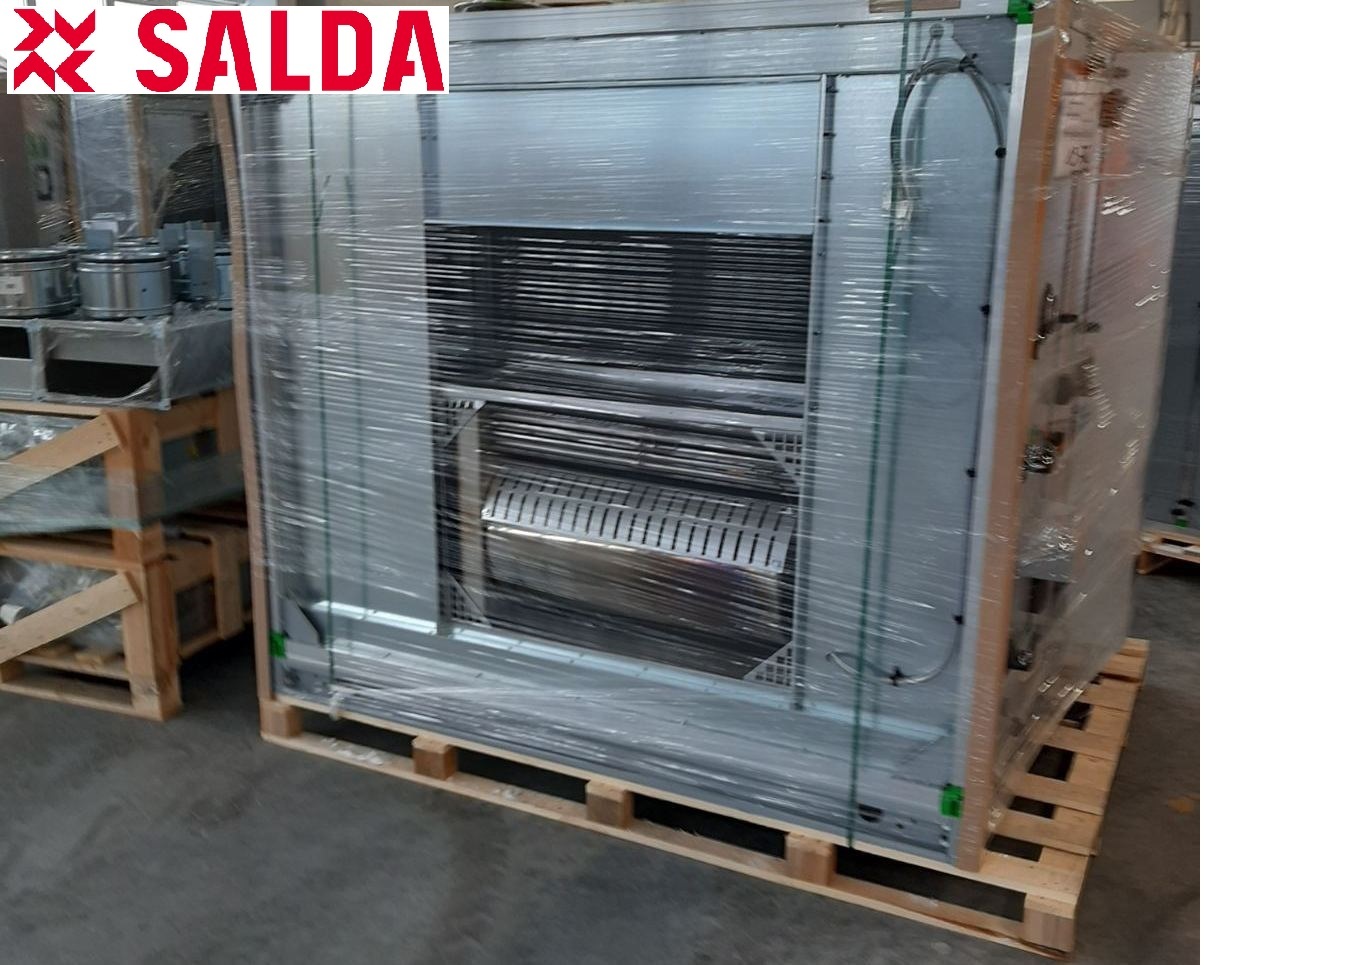 Отгружены центральные кондиционеры Salda с газовым нагревом, рекуперацией и интегрированной автоматикой для поддержания микроклимата на промышленном высокотехнологическом производстве. 